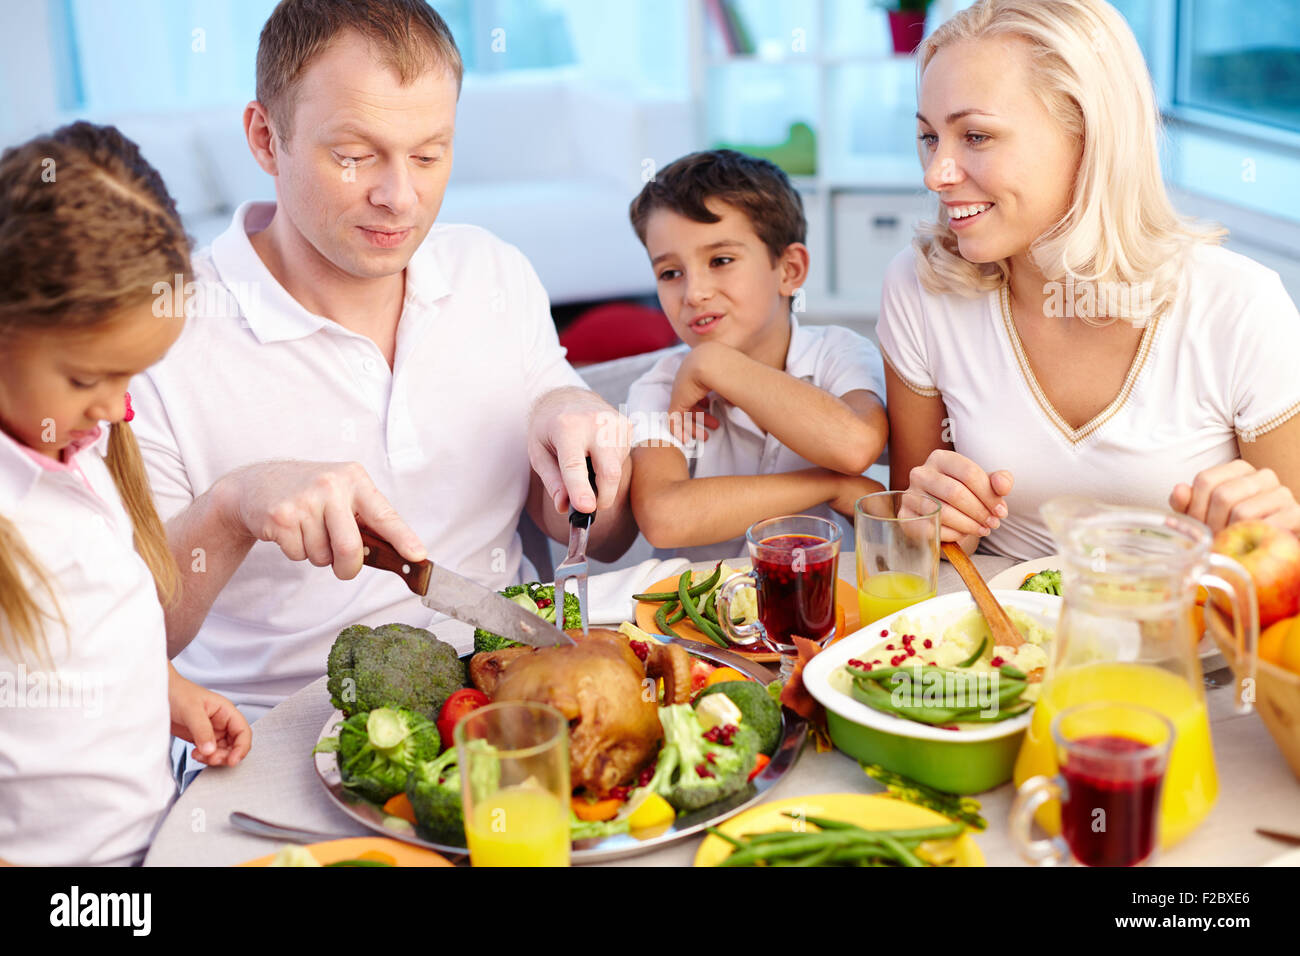 Glückliche junge Familie sitzen festlich gedeckten Tisch und traditionellen Thanksgiving Essen Stockfoto